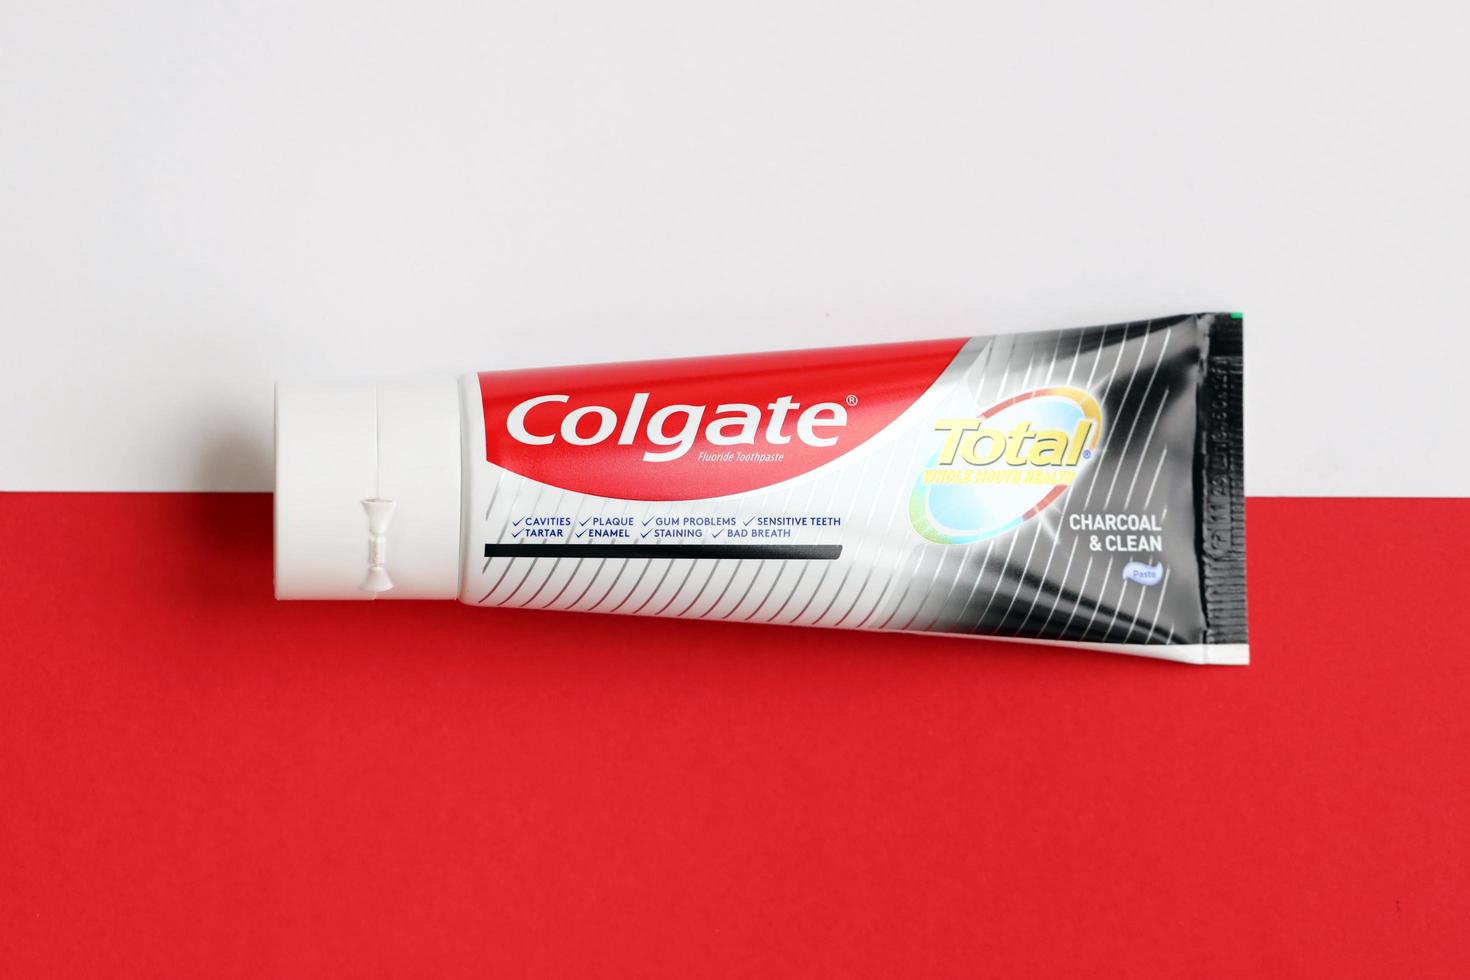 ternopil, ukraine - 23 juin 2022 dentifrice colgate, une marque de produits d'hygiène buccale fabriqués par la société américaine de biens de consommation colgate-palmolive photo